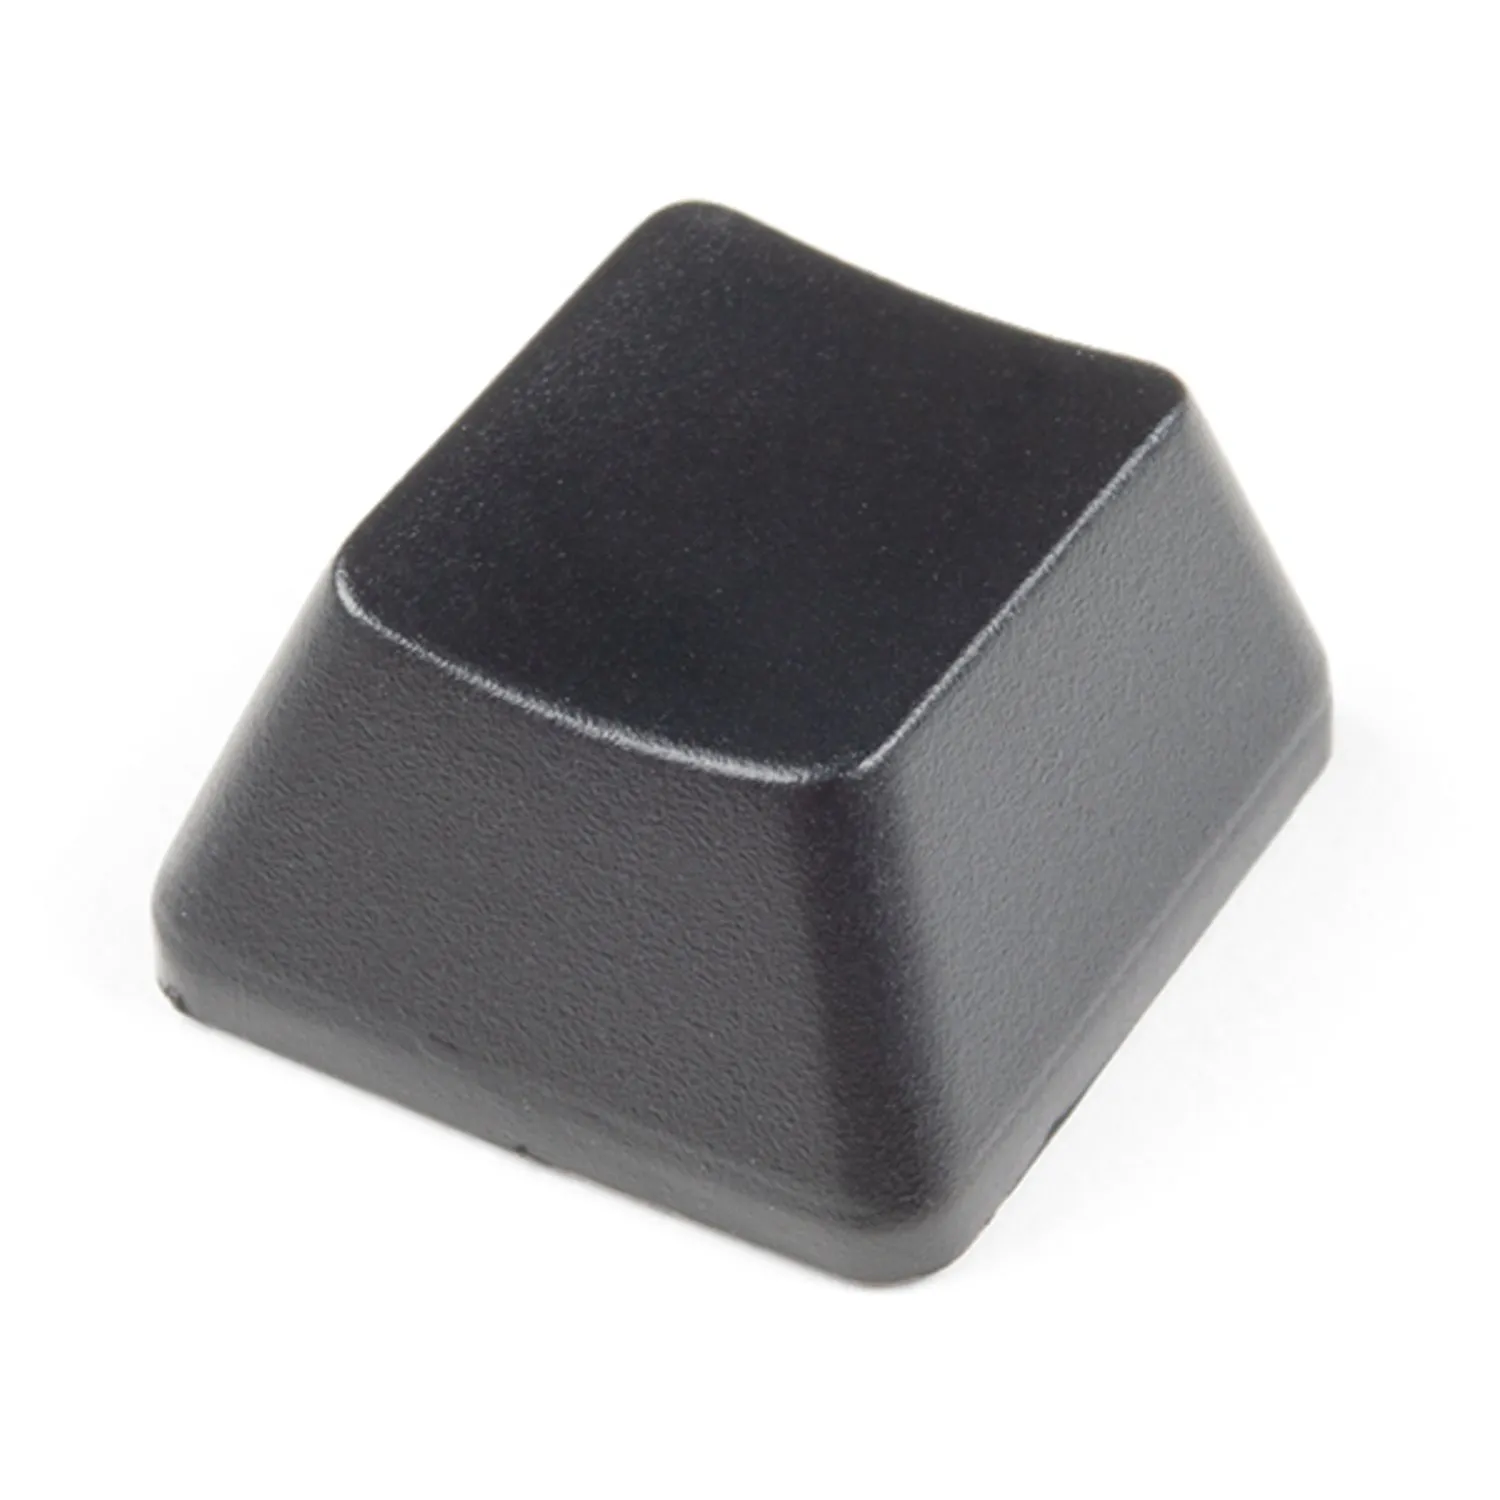 Photo of Cherry MX Keycap - R2 (Opaque Black)